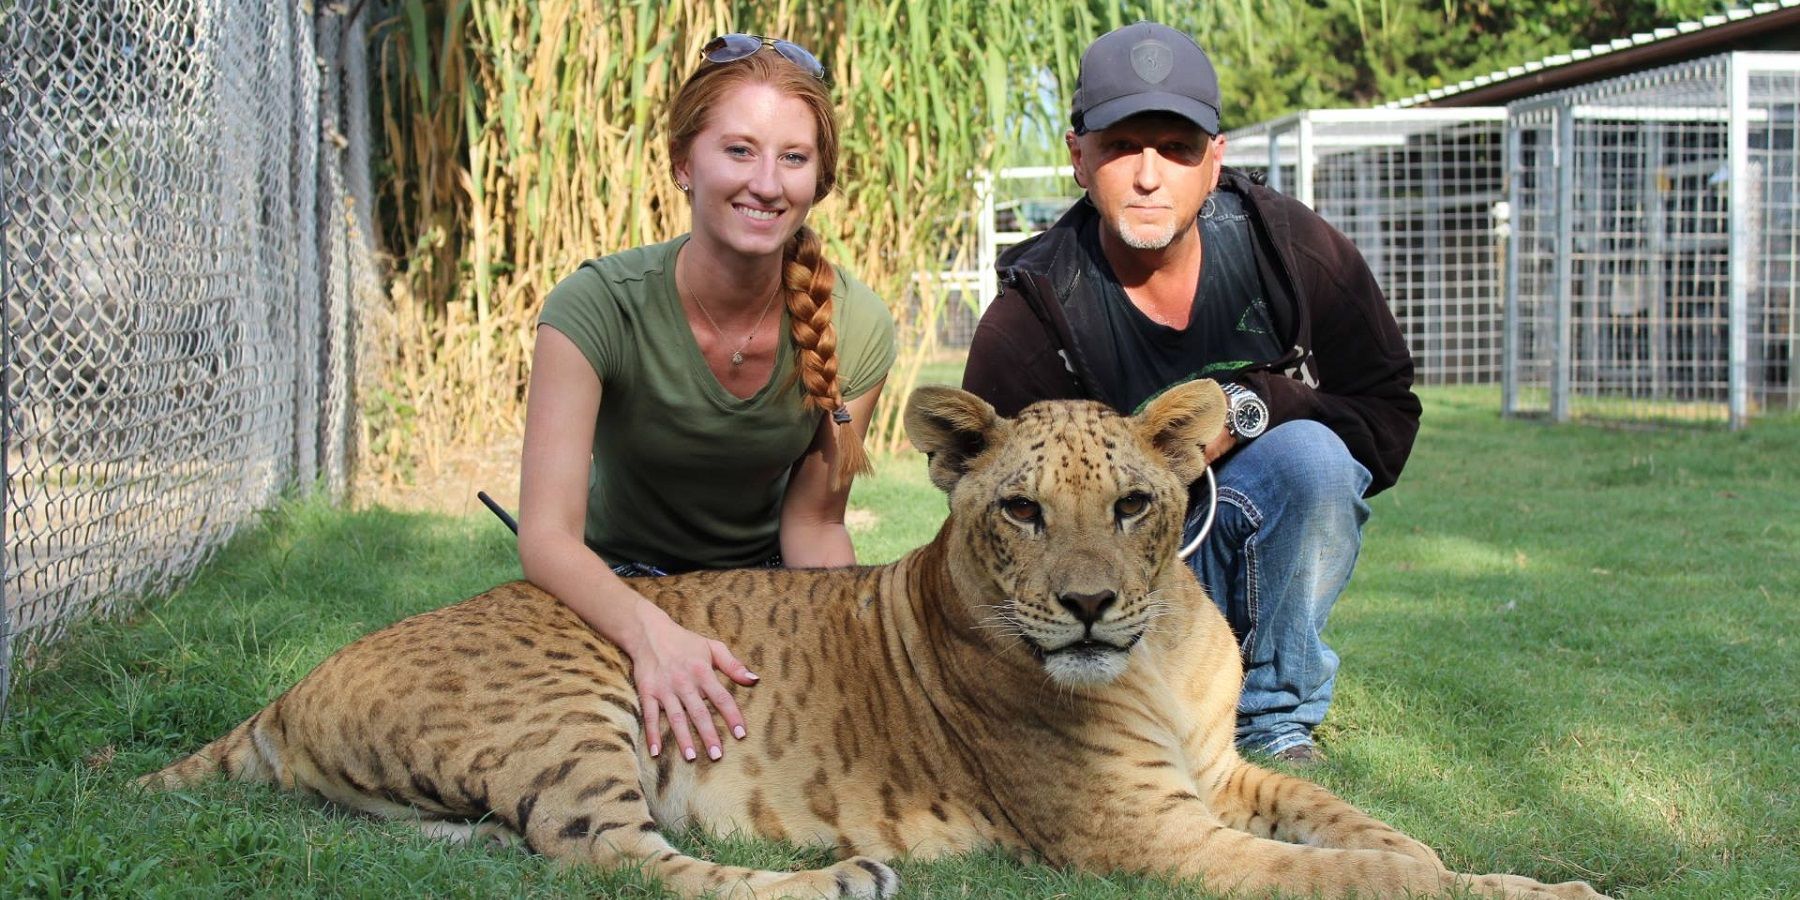 Jeff Lowe de Tiger King tiene prohibido exhibir animales de por vida